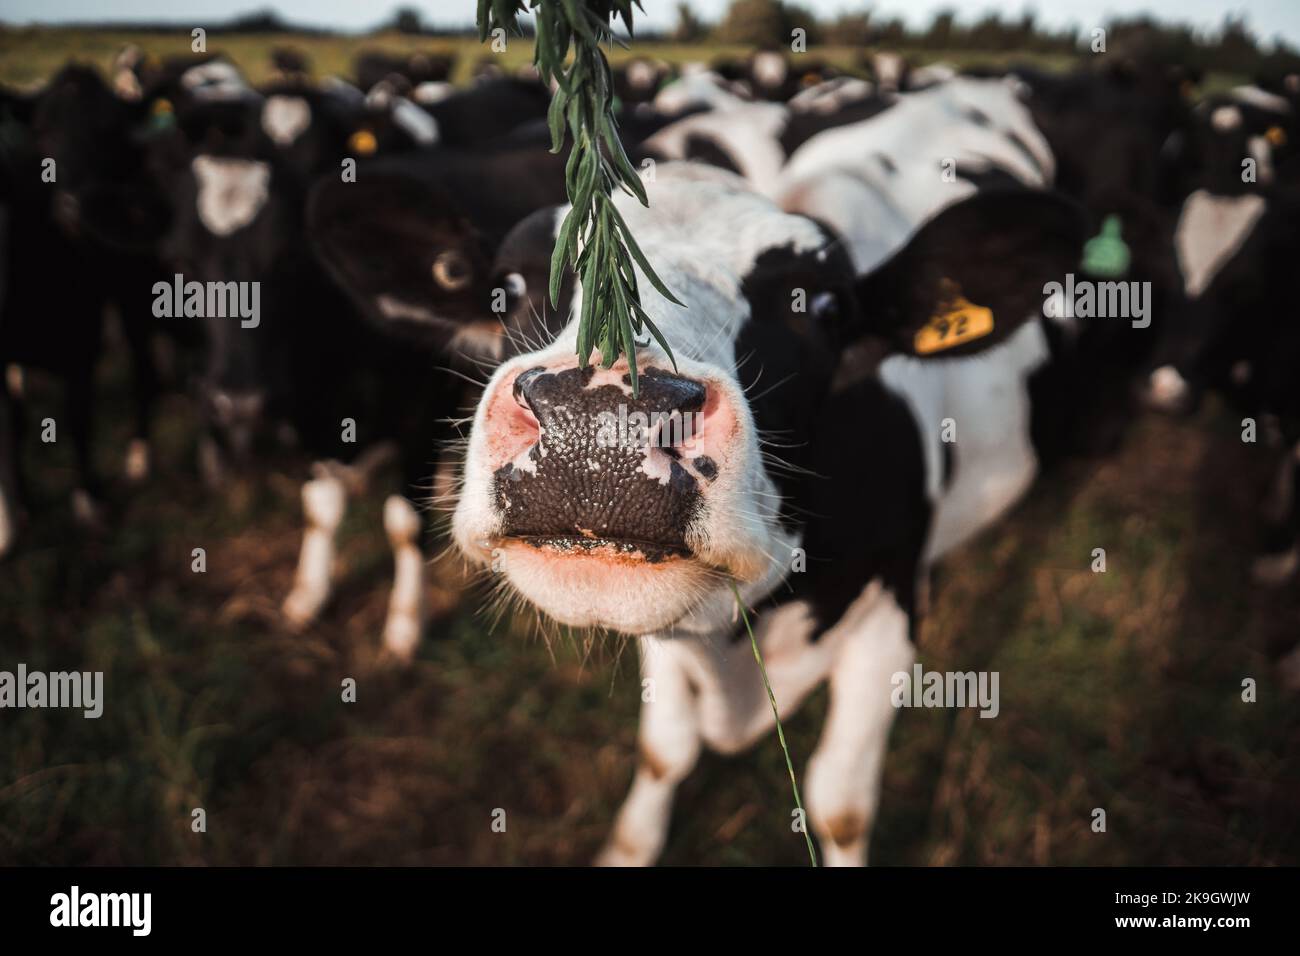 grande mucca bianca e nera che sniffing una pianta verde piacevole con le foglie strette piccole in un prato verde vicino ad una mandria di mucche, rotorua, nuova zelanda Foto Stock